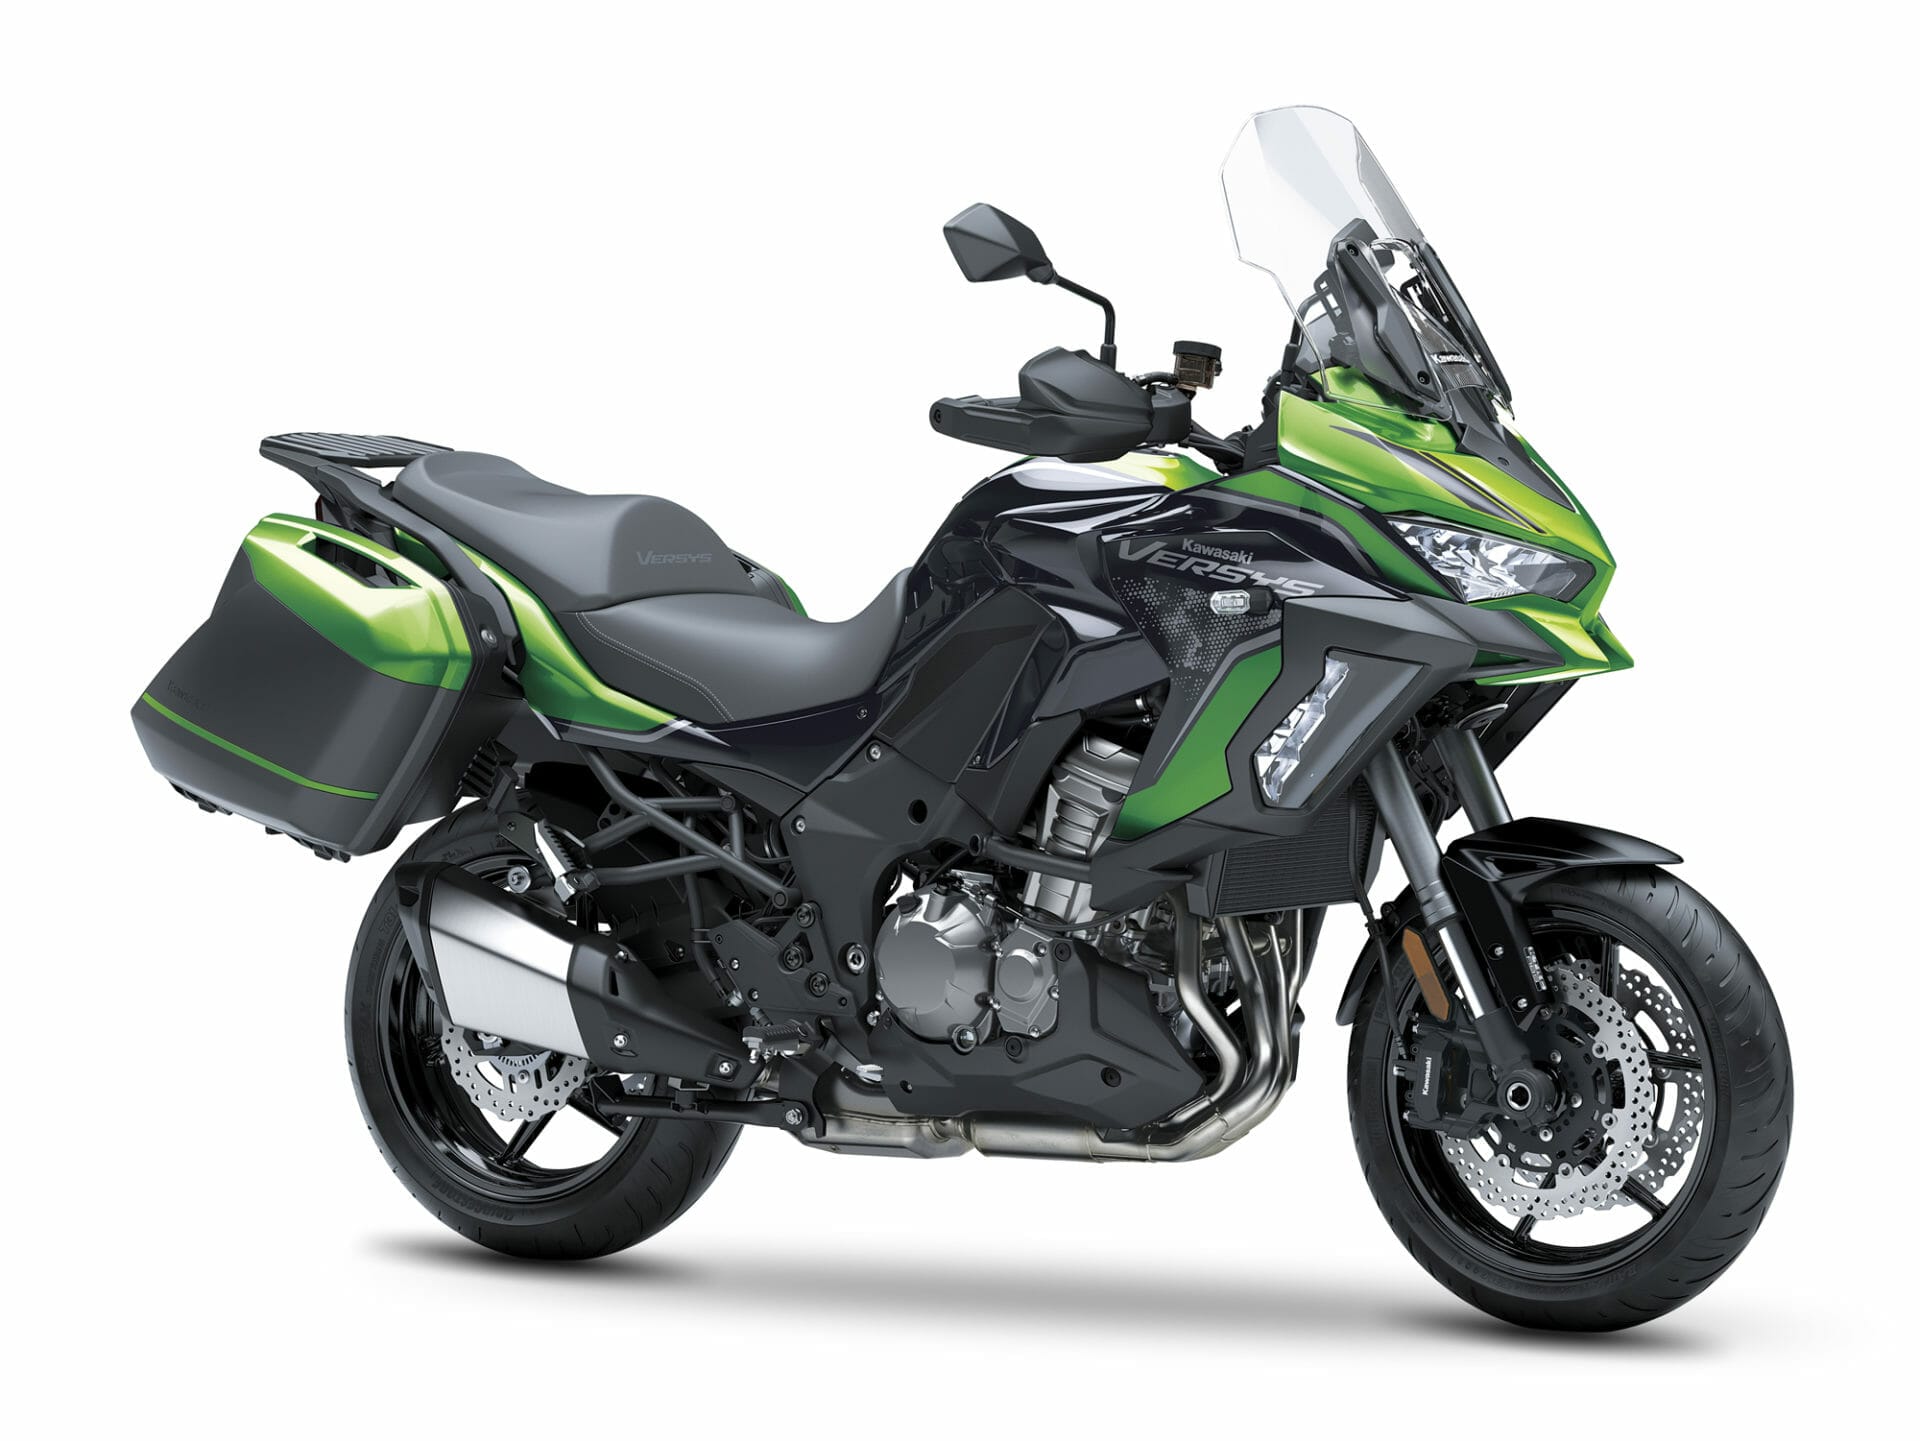 Neue Kawasaki Versys 1000 SE für 2021
- auch in der MOTORRAD NACHRICHTEN APP